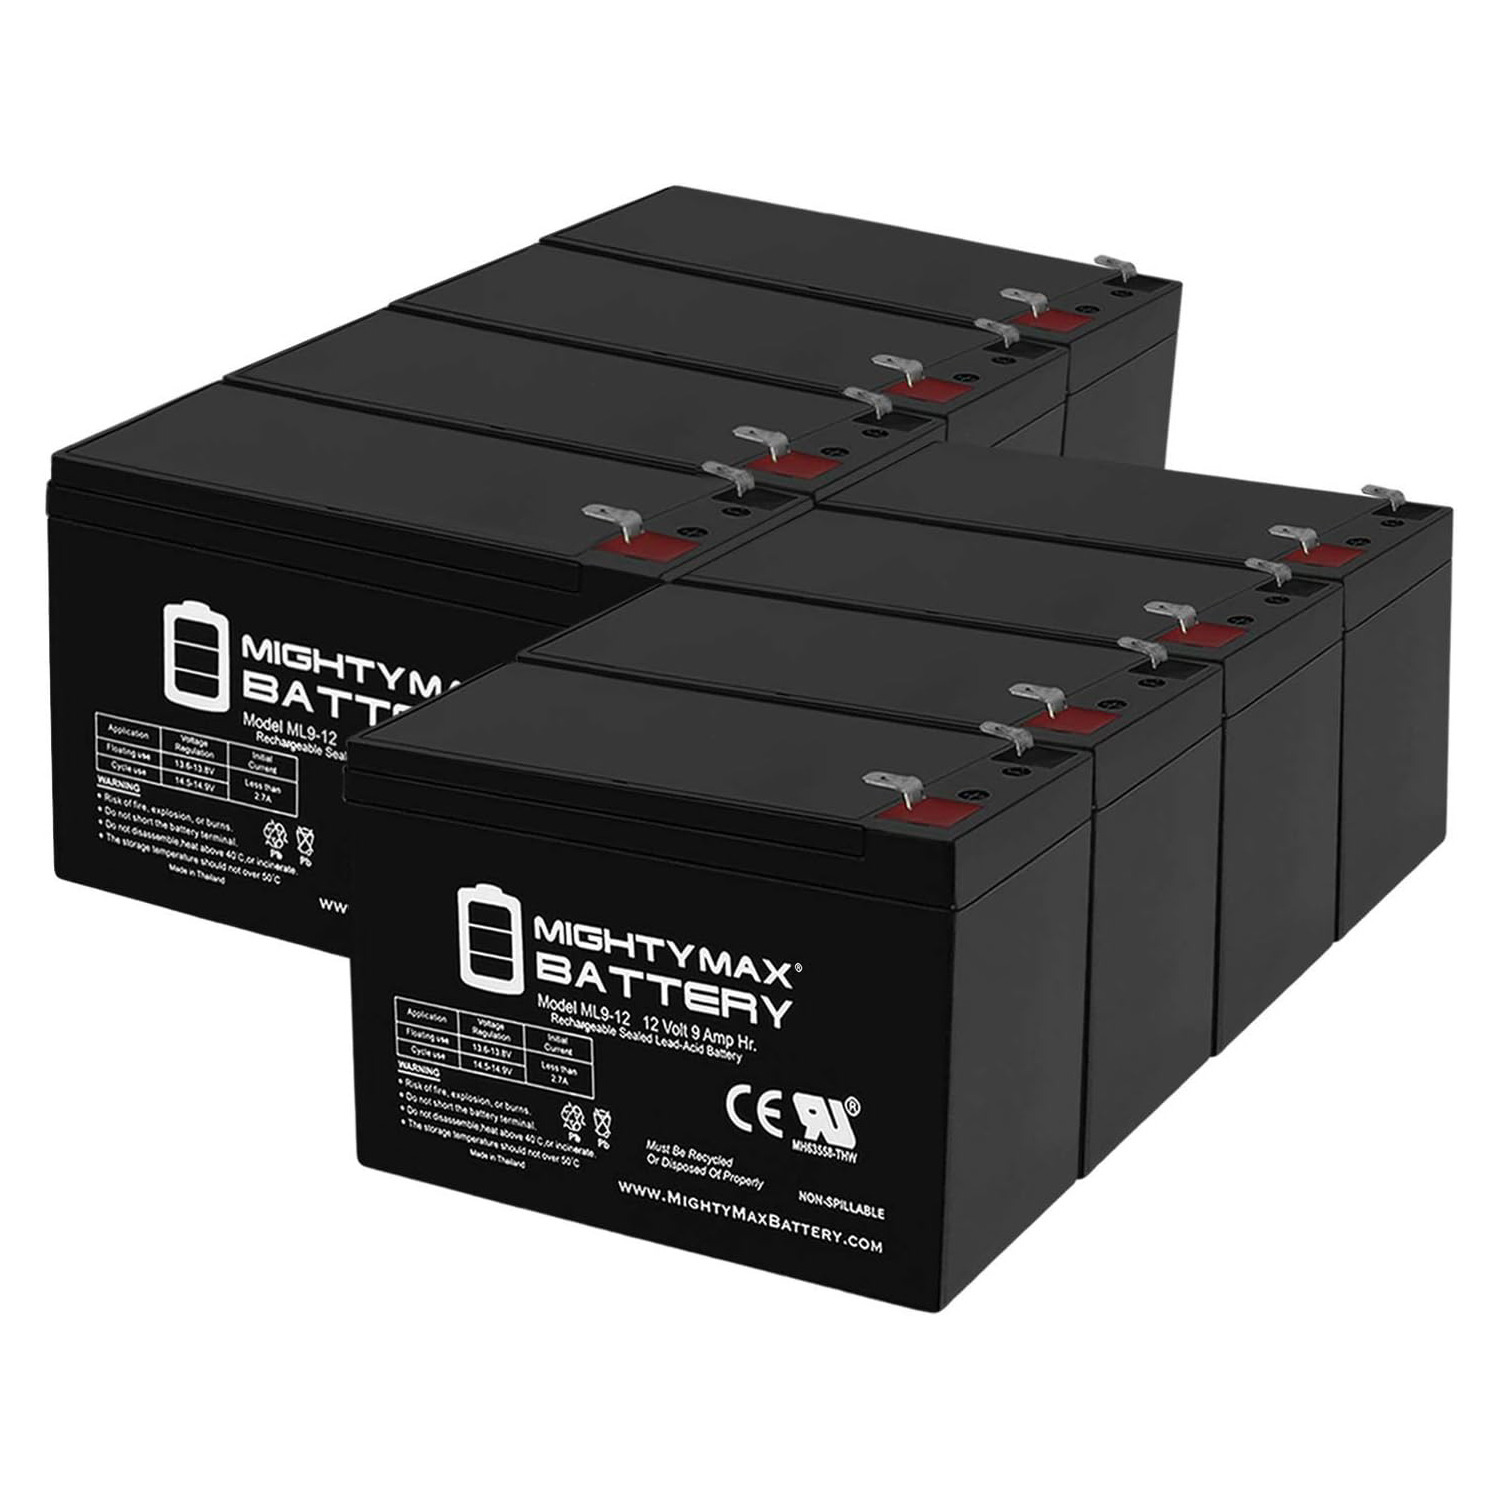 Altronix AL600ULPD8 12V, 9Ah Lead Acid Battery - 8 Pack